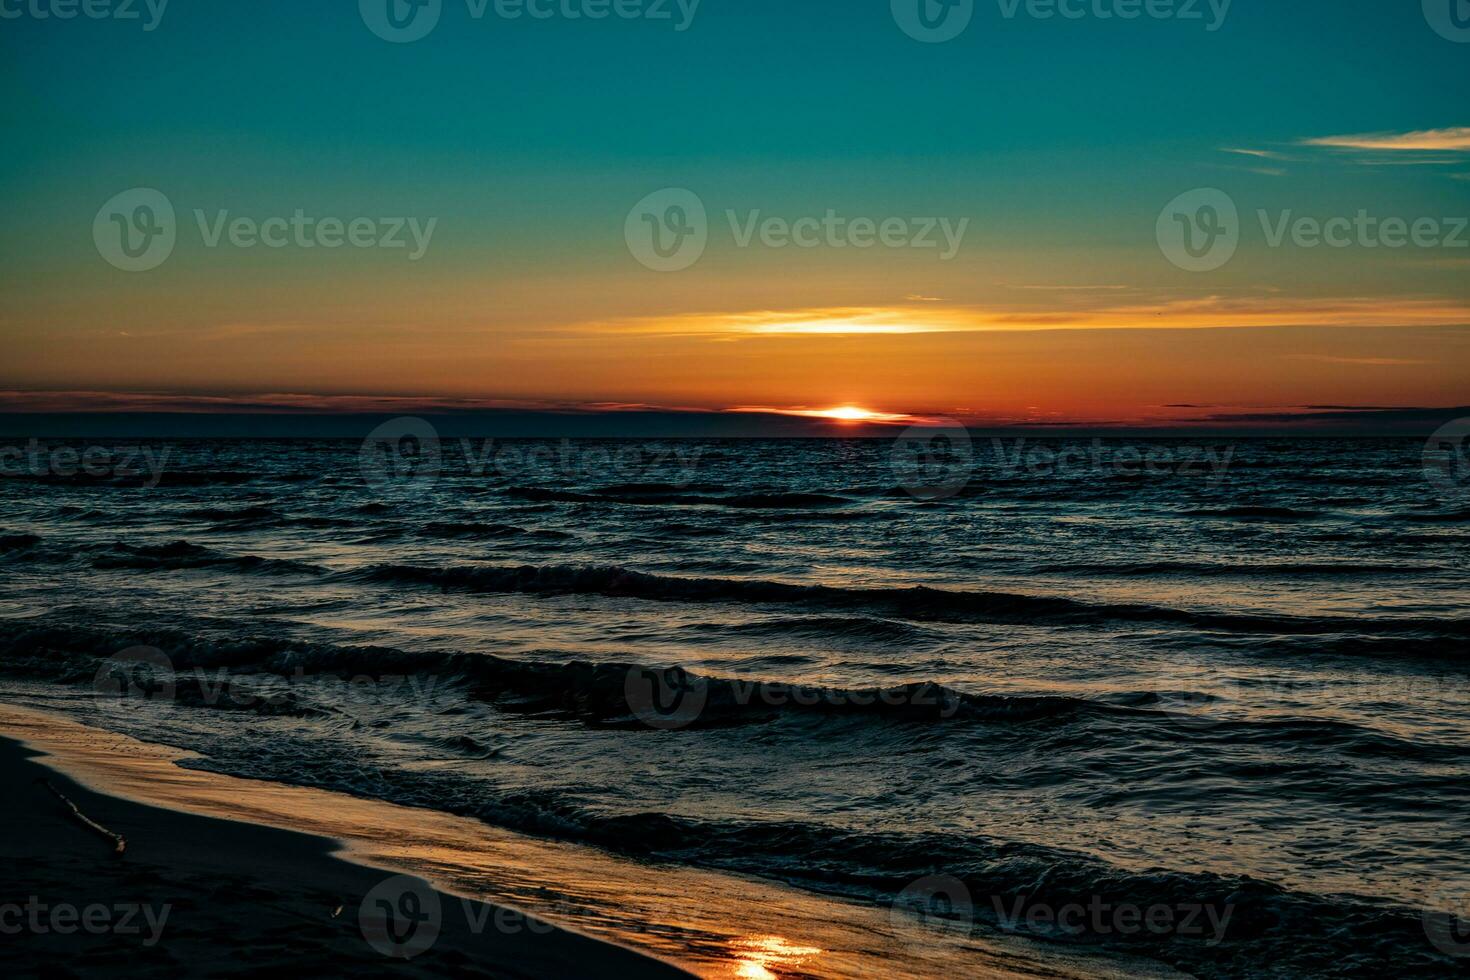 pittoresk lugna solnedgång med färgrik moln på de stränder av de baltic hav i polen foto